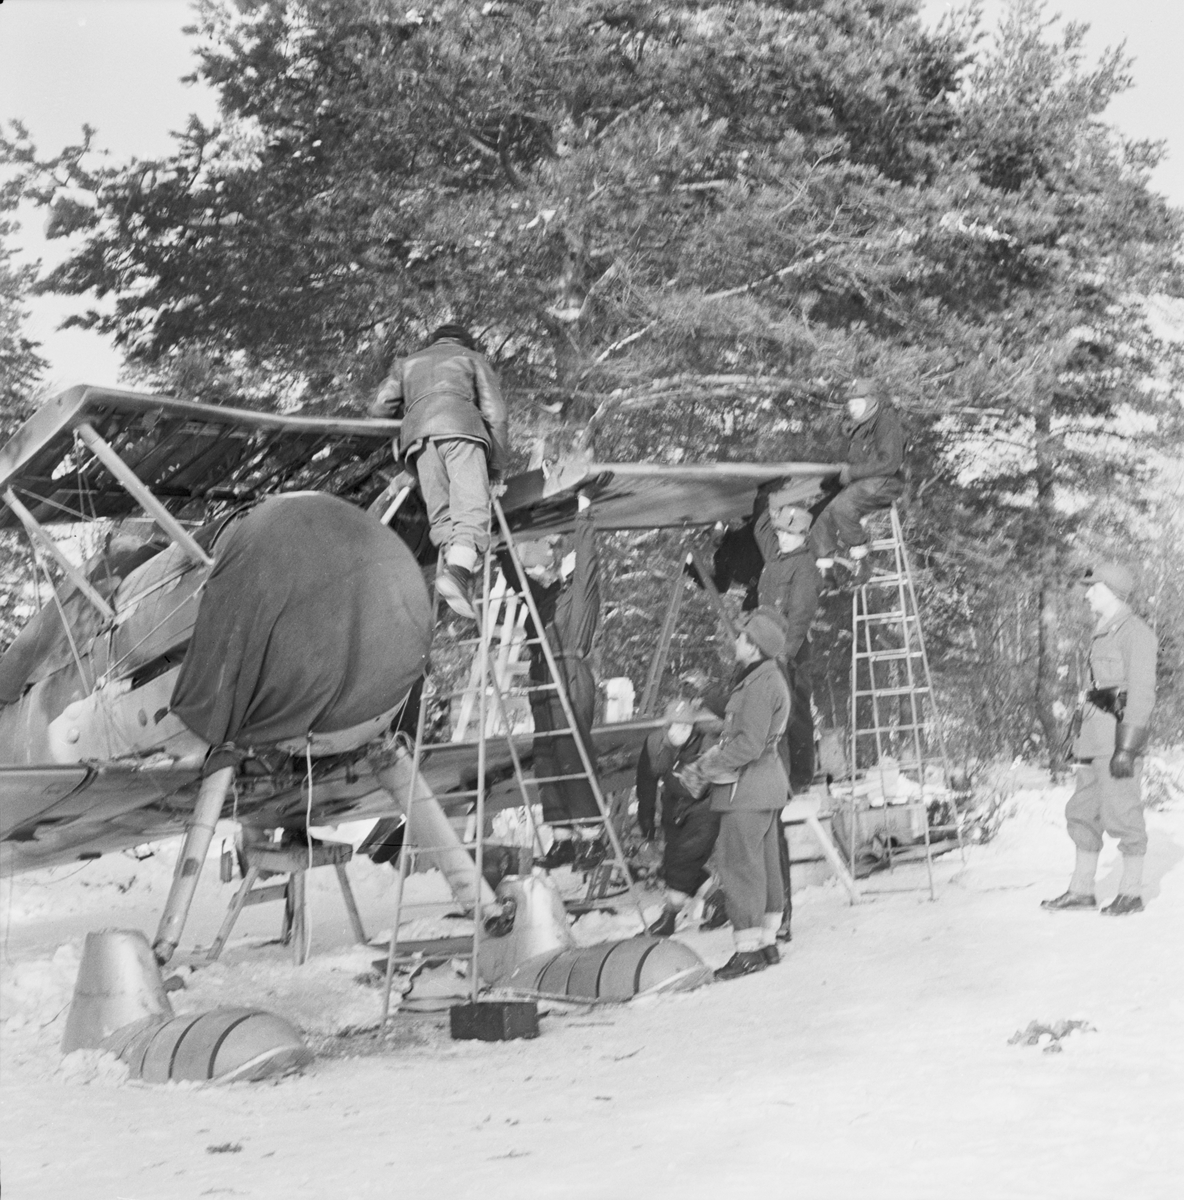 Demontering av flygplan Gloster Gladiator efter Finska vinterkrigets slut i mitten av mars 1940 vid Svenska frivilligkåren i Finland, F 19. Sju militärer i arbete vid flygplanet.